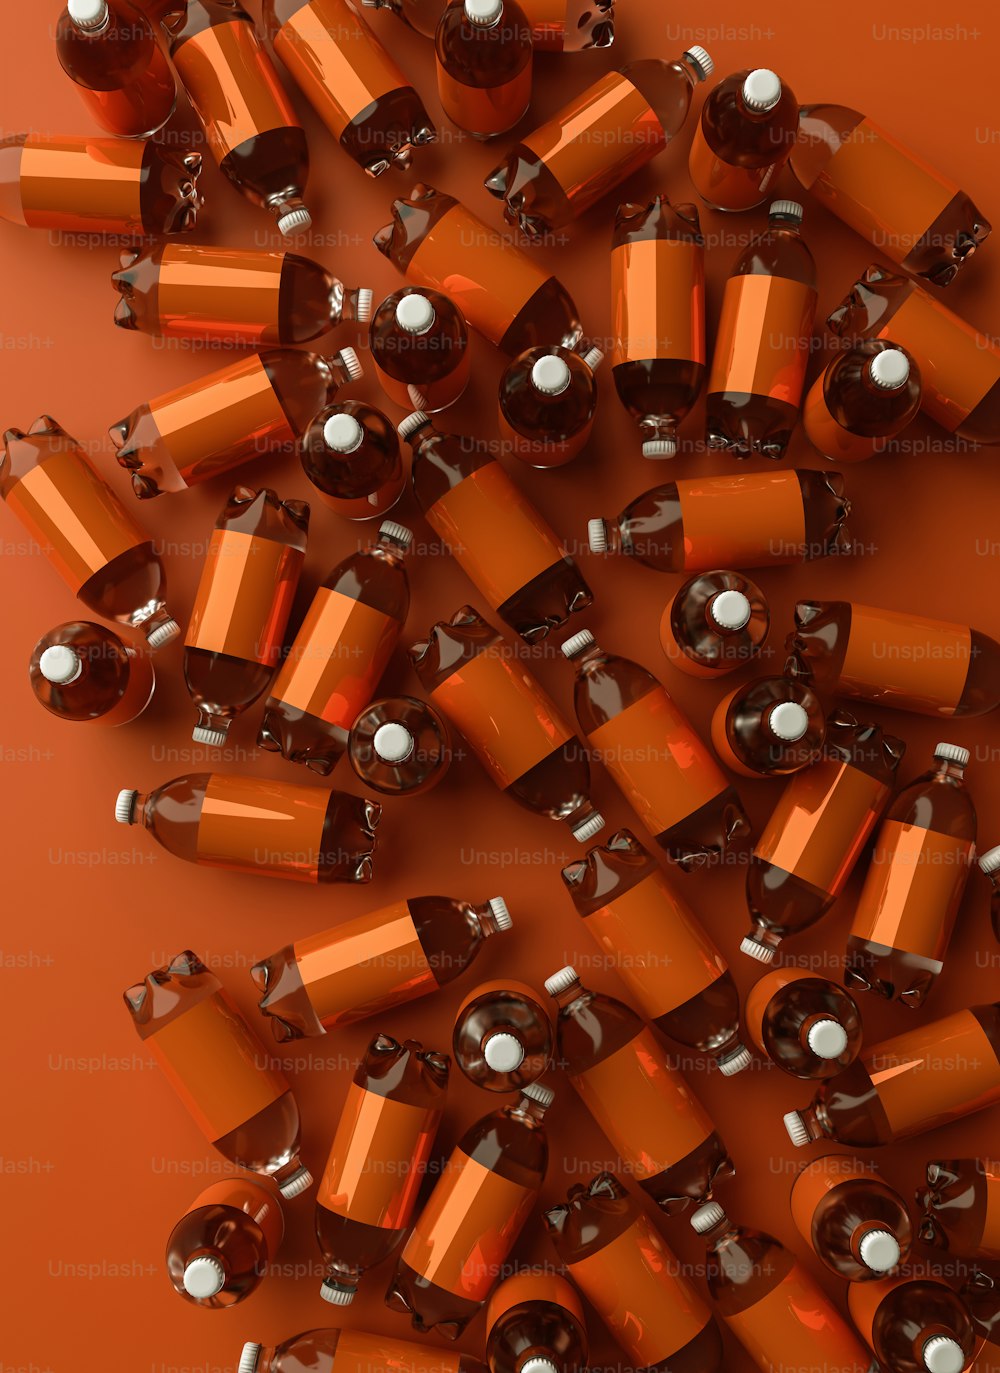 Ein Stapel orangefarbener und silberner Batterien auf orangefarbenem Hintergrund